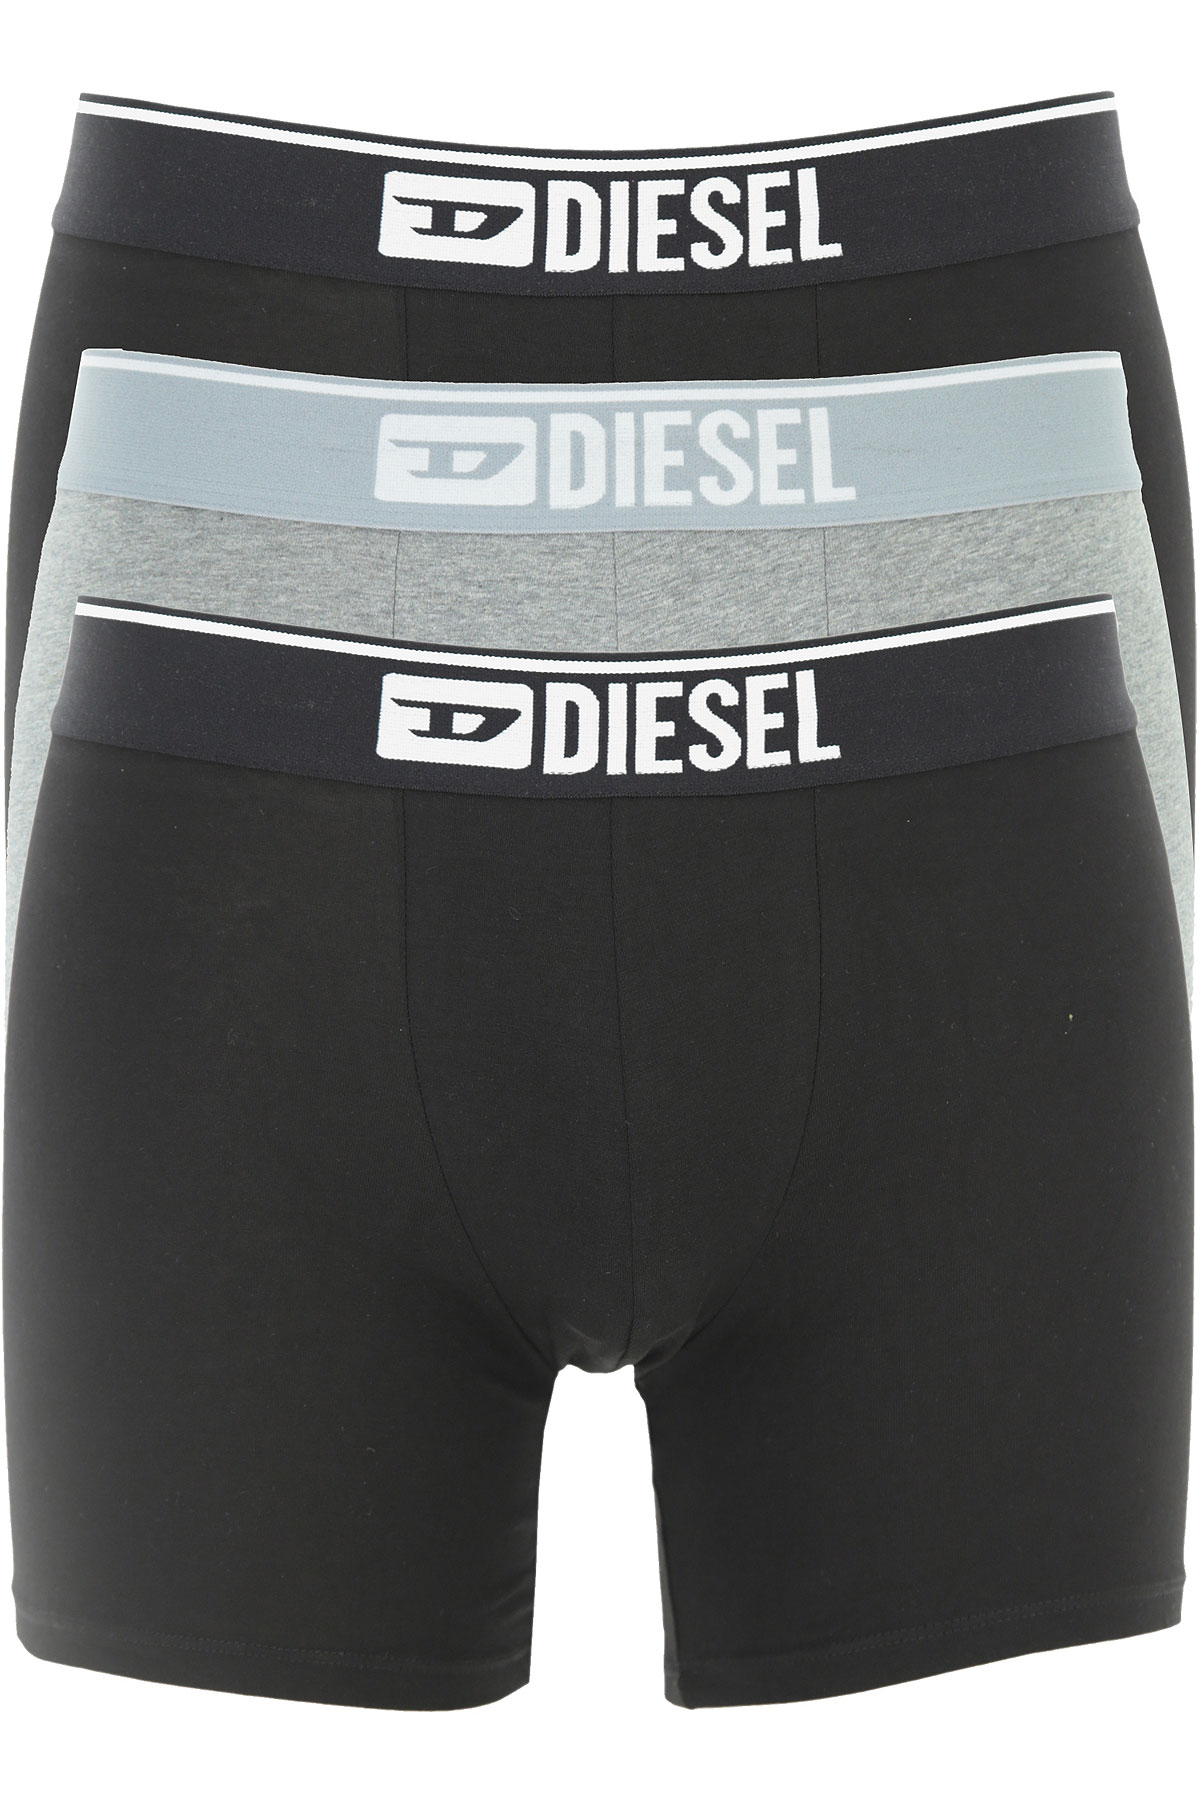 กางเกง ใน diesel